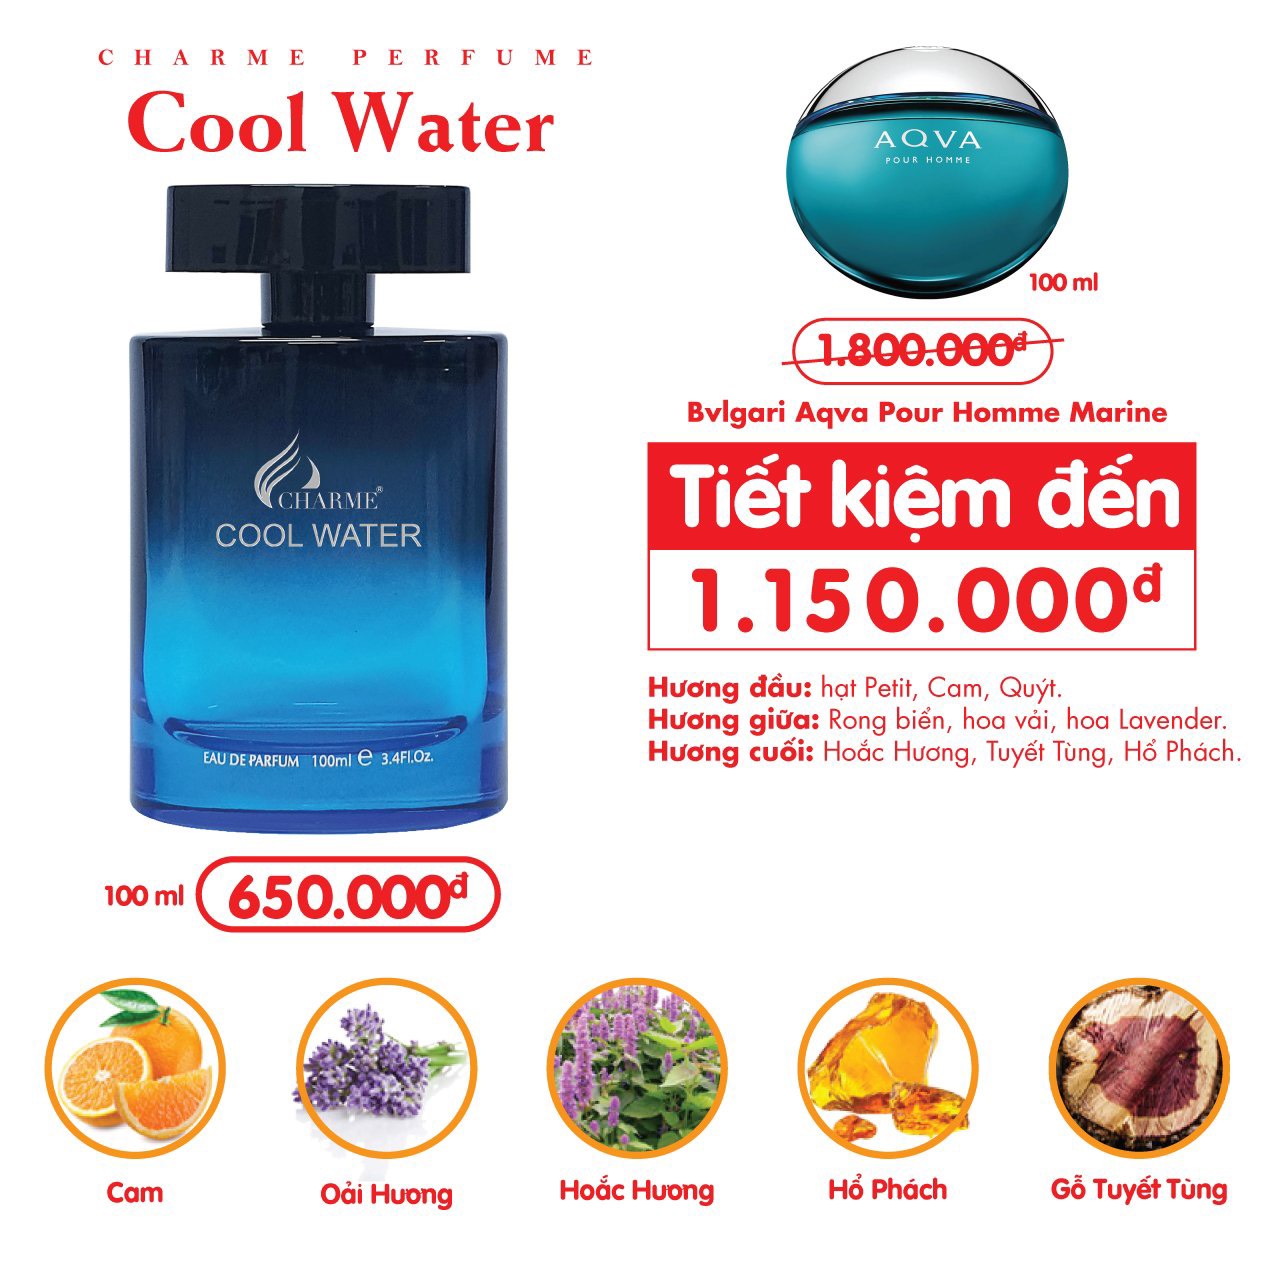 Nước Hoa Nam Charme Cool Water 100ml phong cách Sang trọng, lịch lãm, tươi mát.